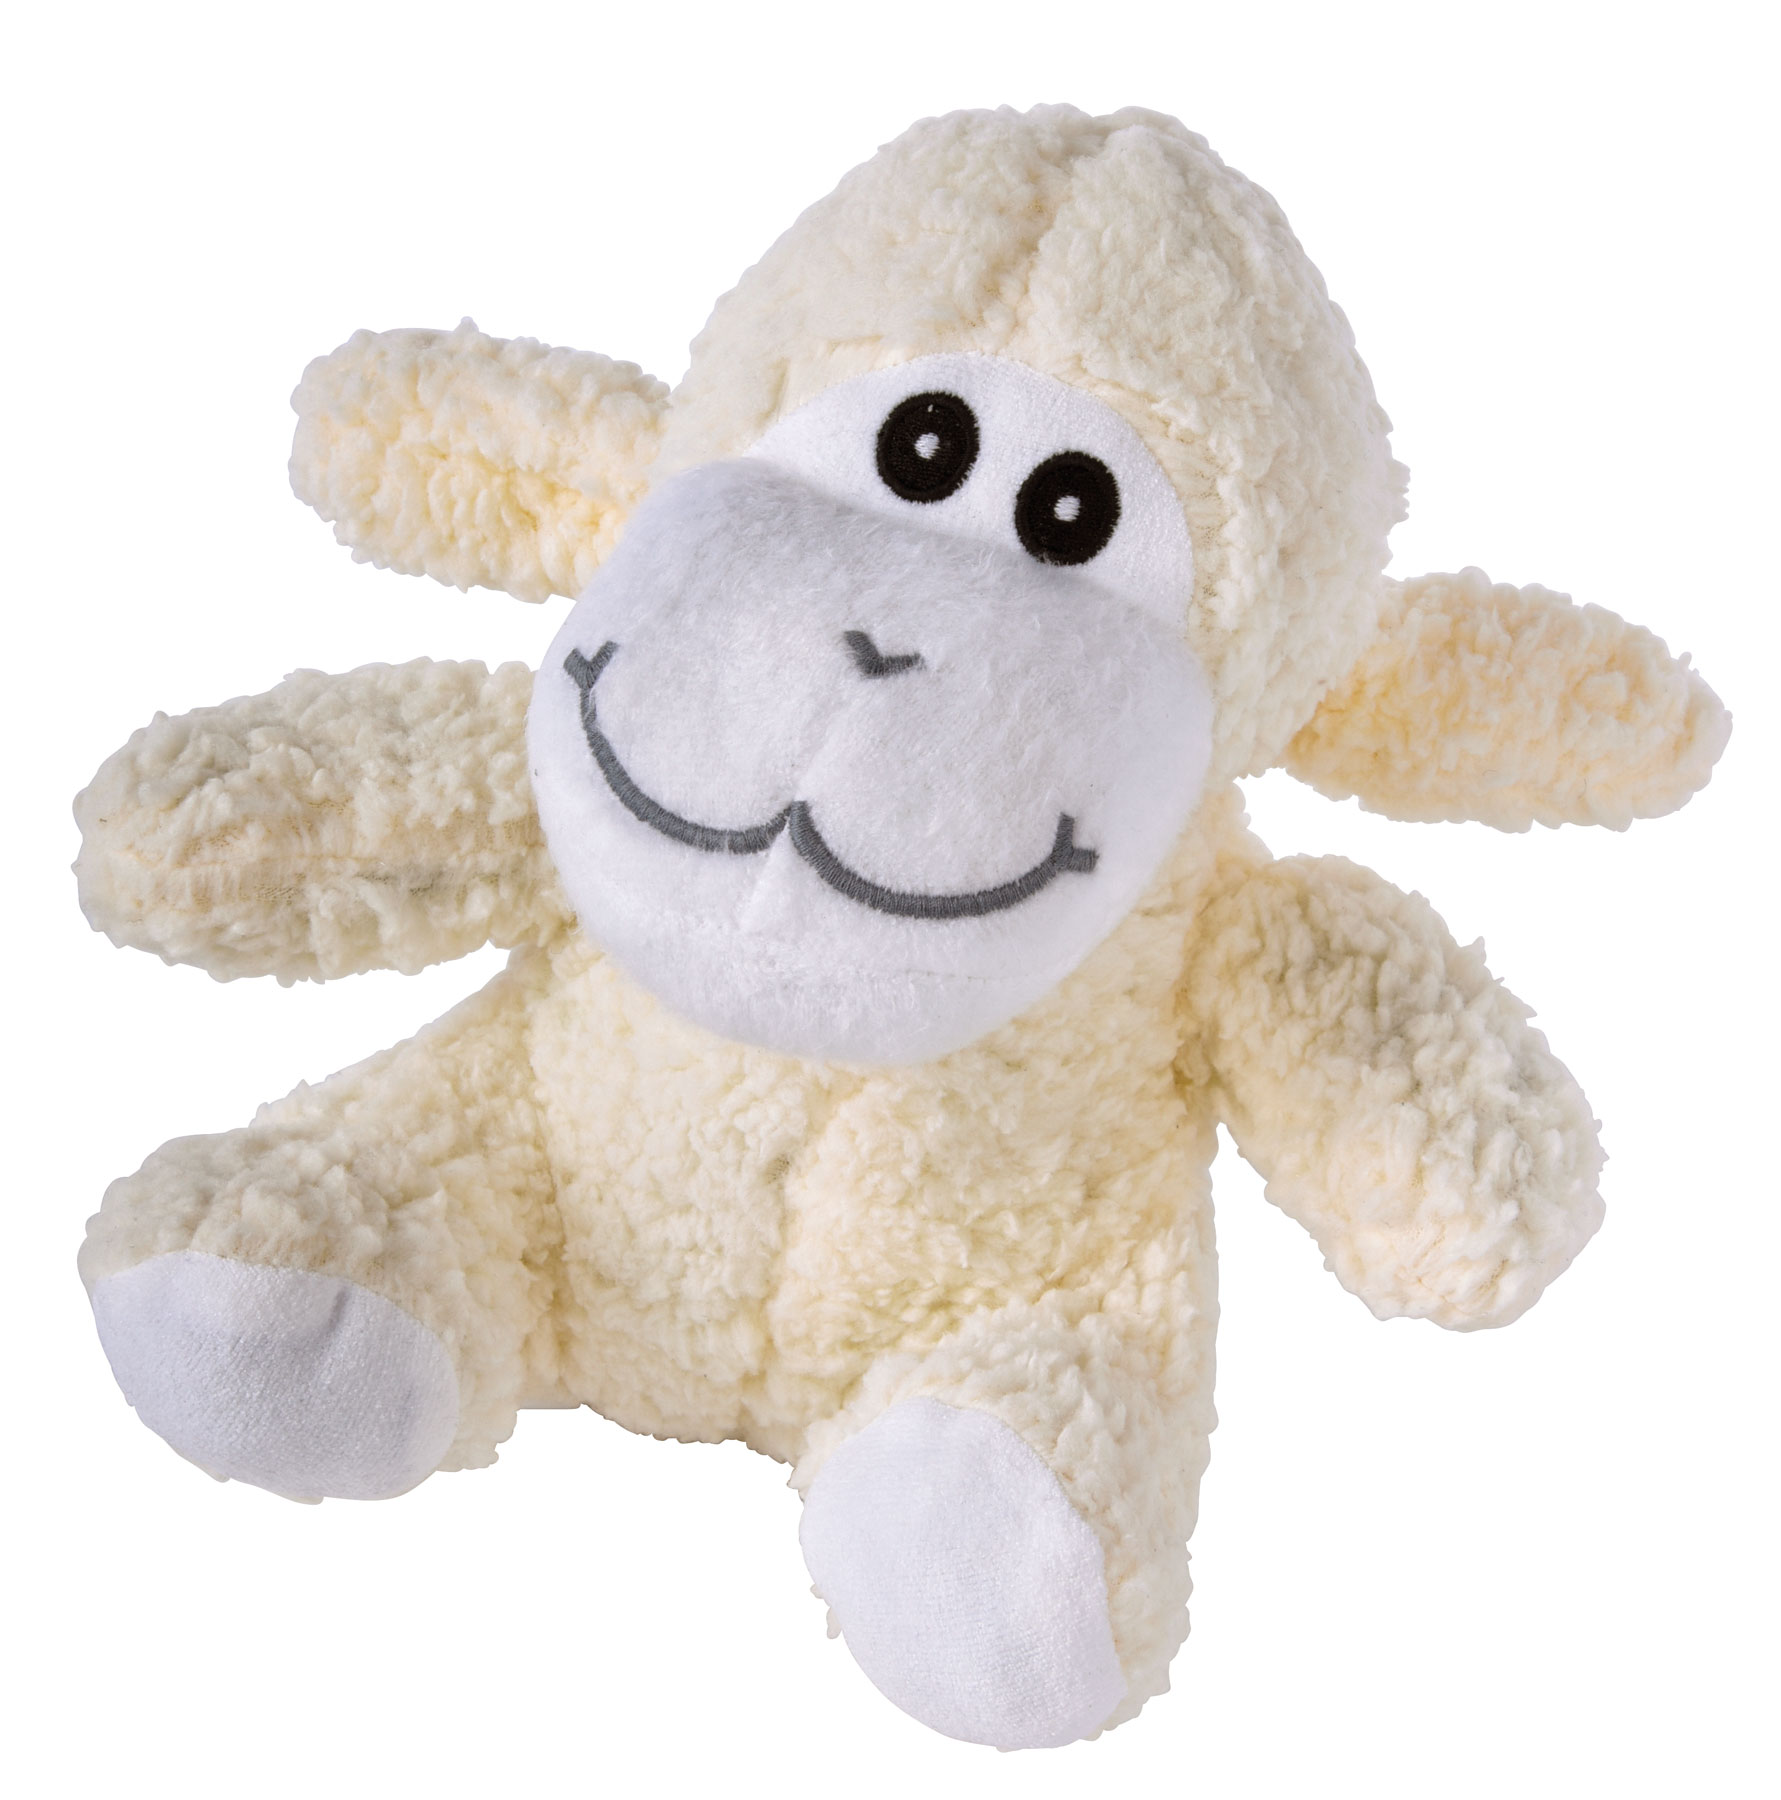 Plush sheep MELINA - white